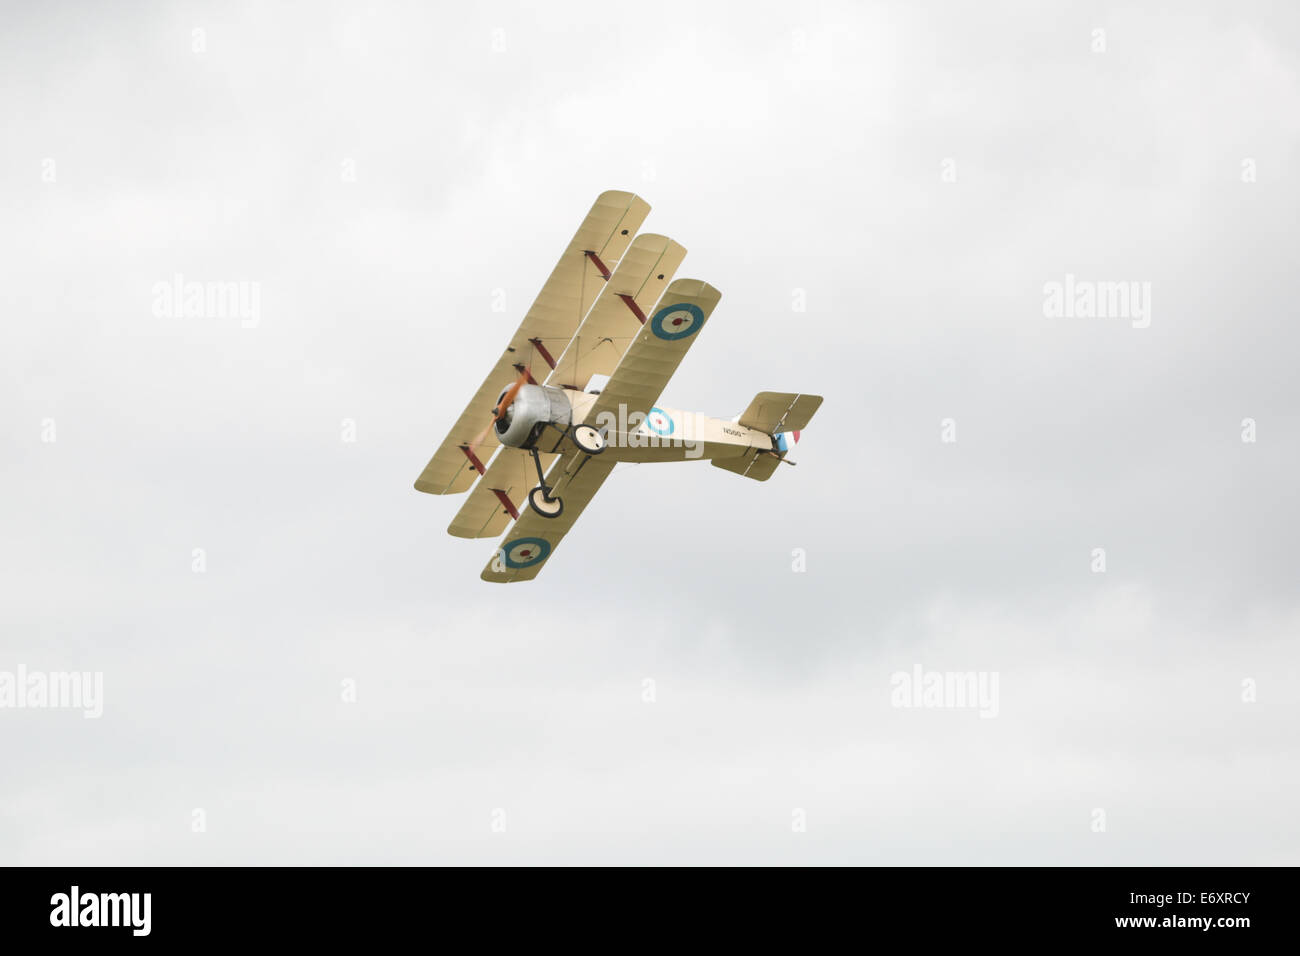 Questa è la Grande Guerra Team Display - Sopwith triplano visualizzato a Shoreham Airshow, 2014, Shoreham Airport, East Sussex, Regno Unito. Foto Stock